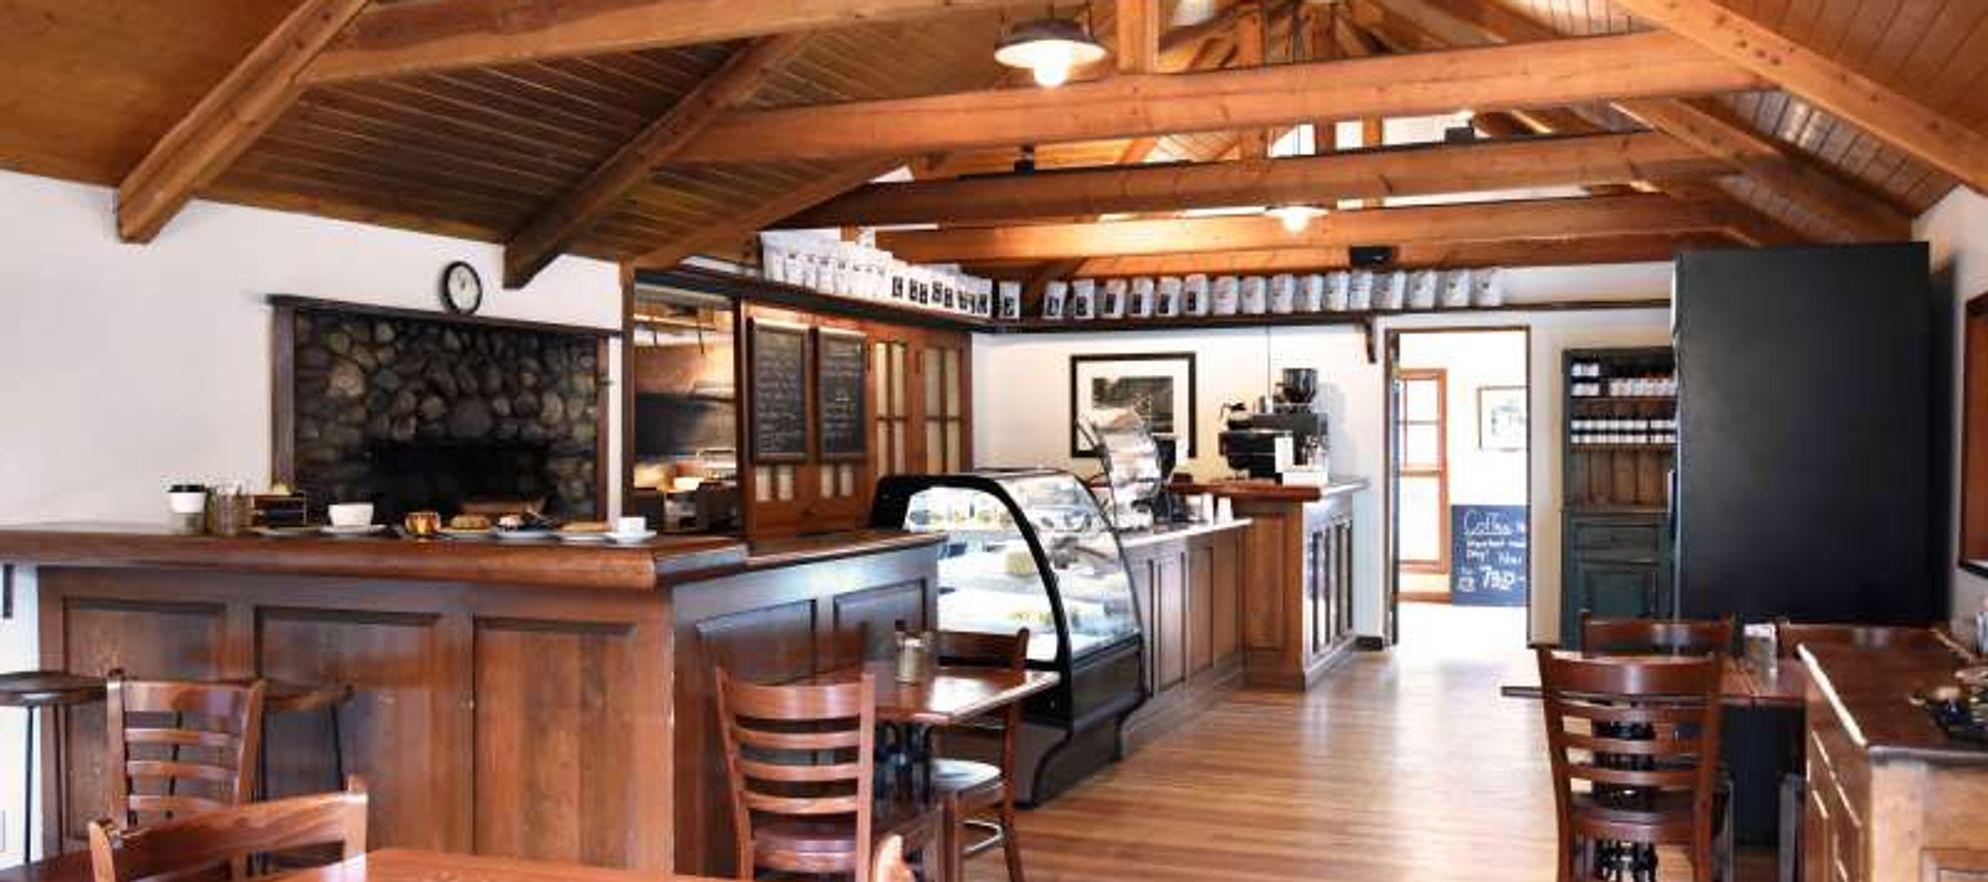 Buffalo Mountain Café